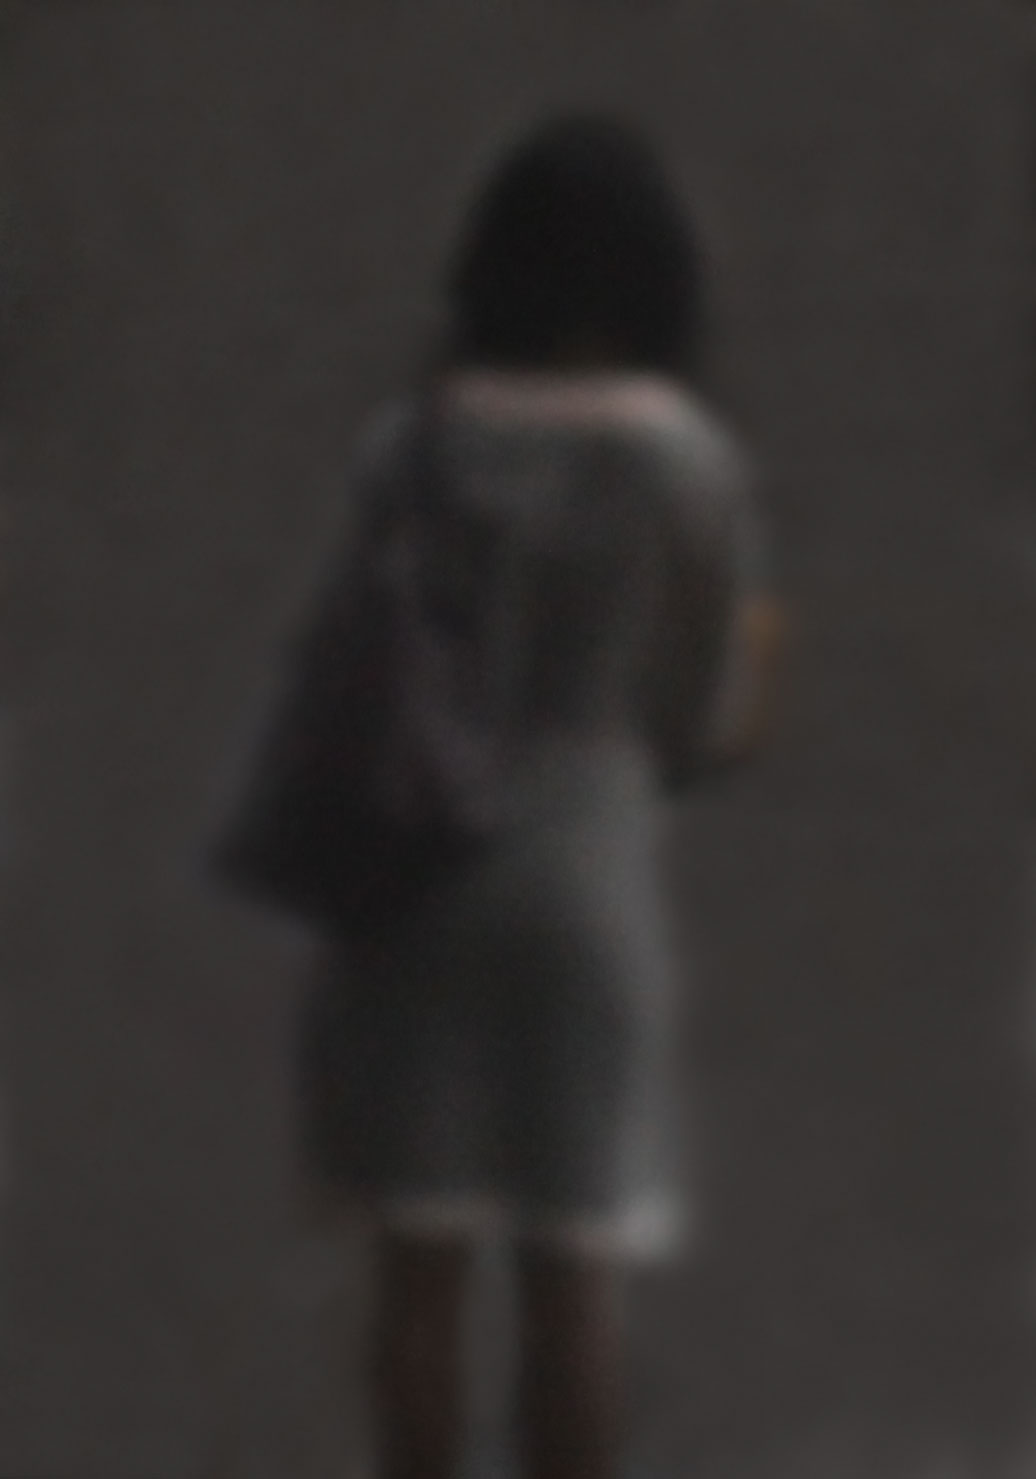 38 „Frau mit warmen Grautönen“, 2012, New York, Camera Obscura, Pigmentdruck auf Alu-Dibond